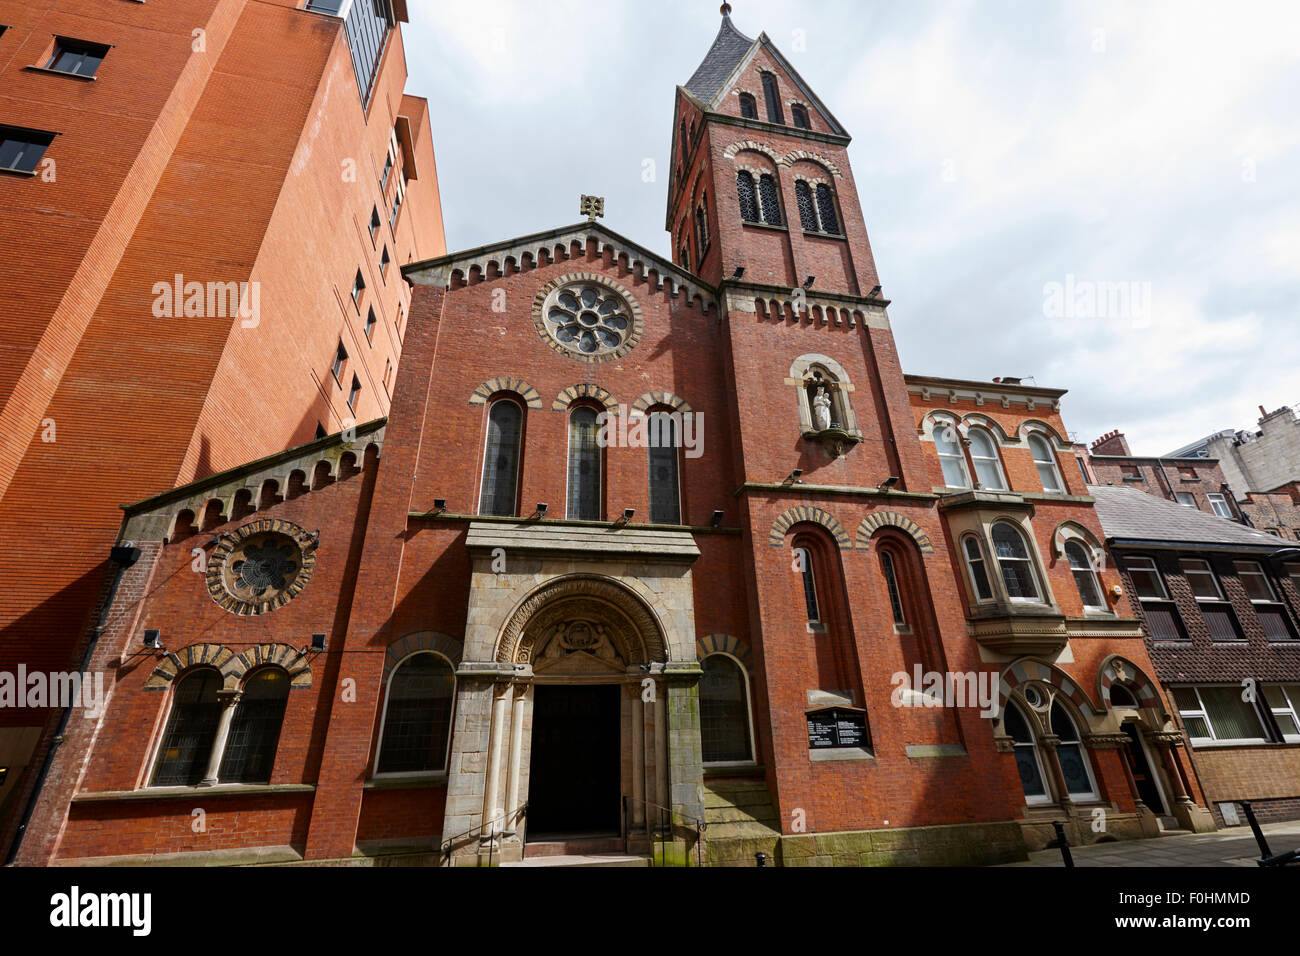 St Marys église catholique connu comme le joyau caché de l'Angleterre Manchester UK Banque D'Images